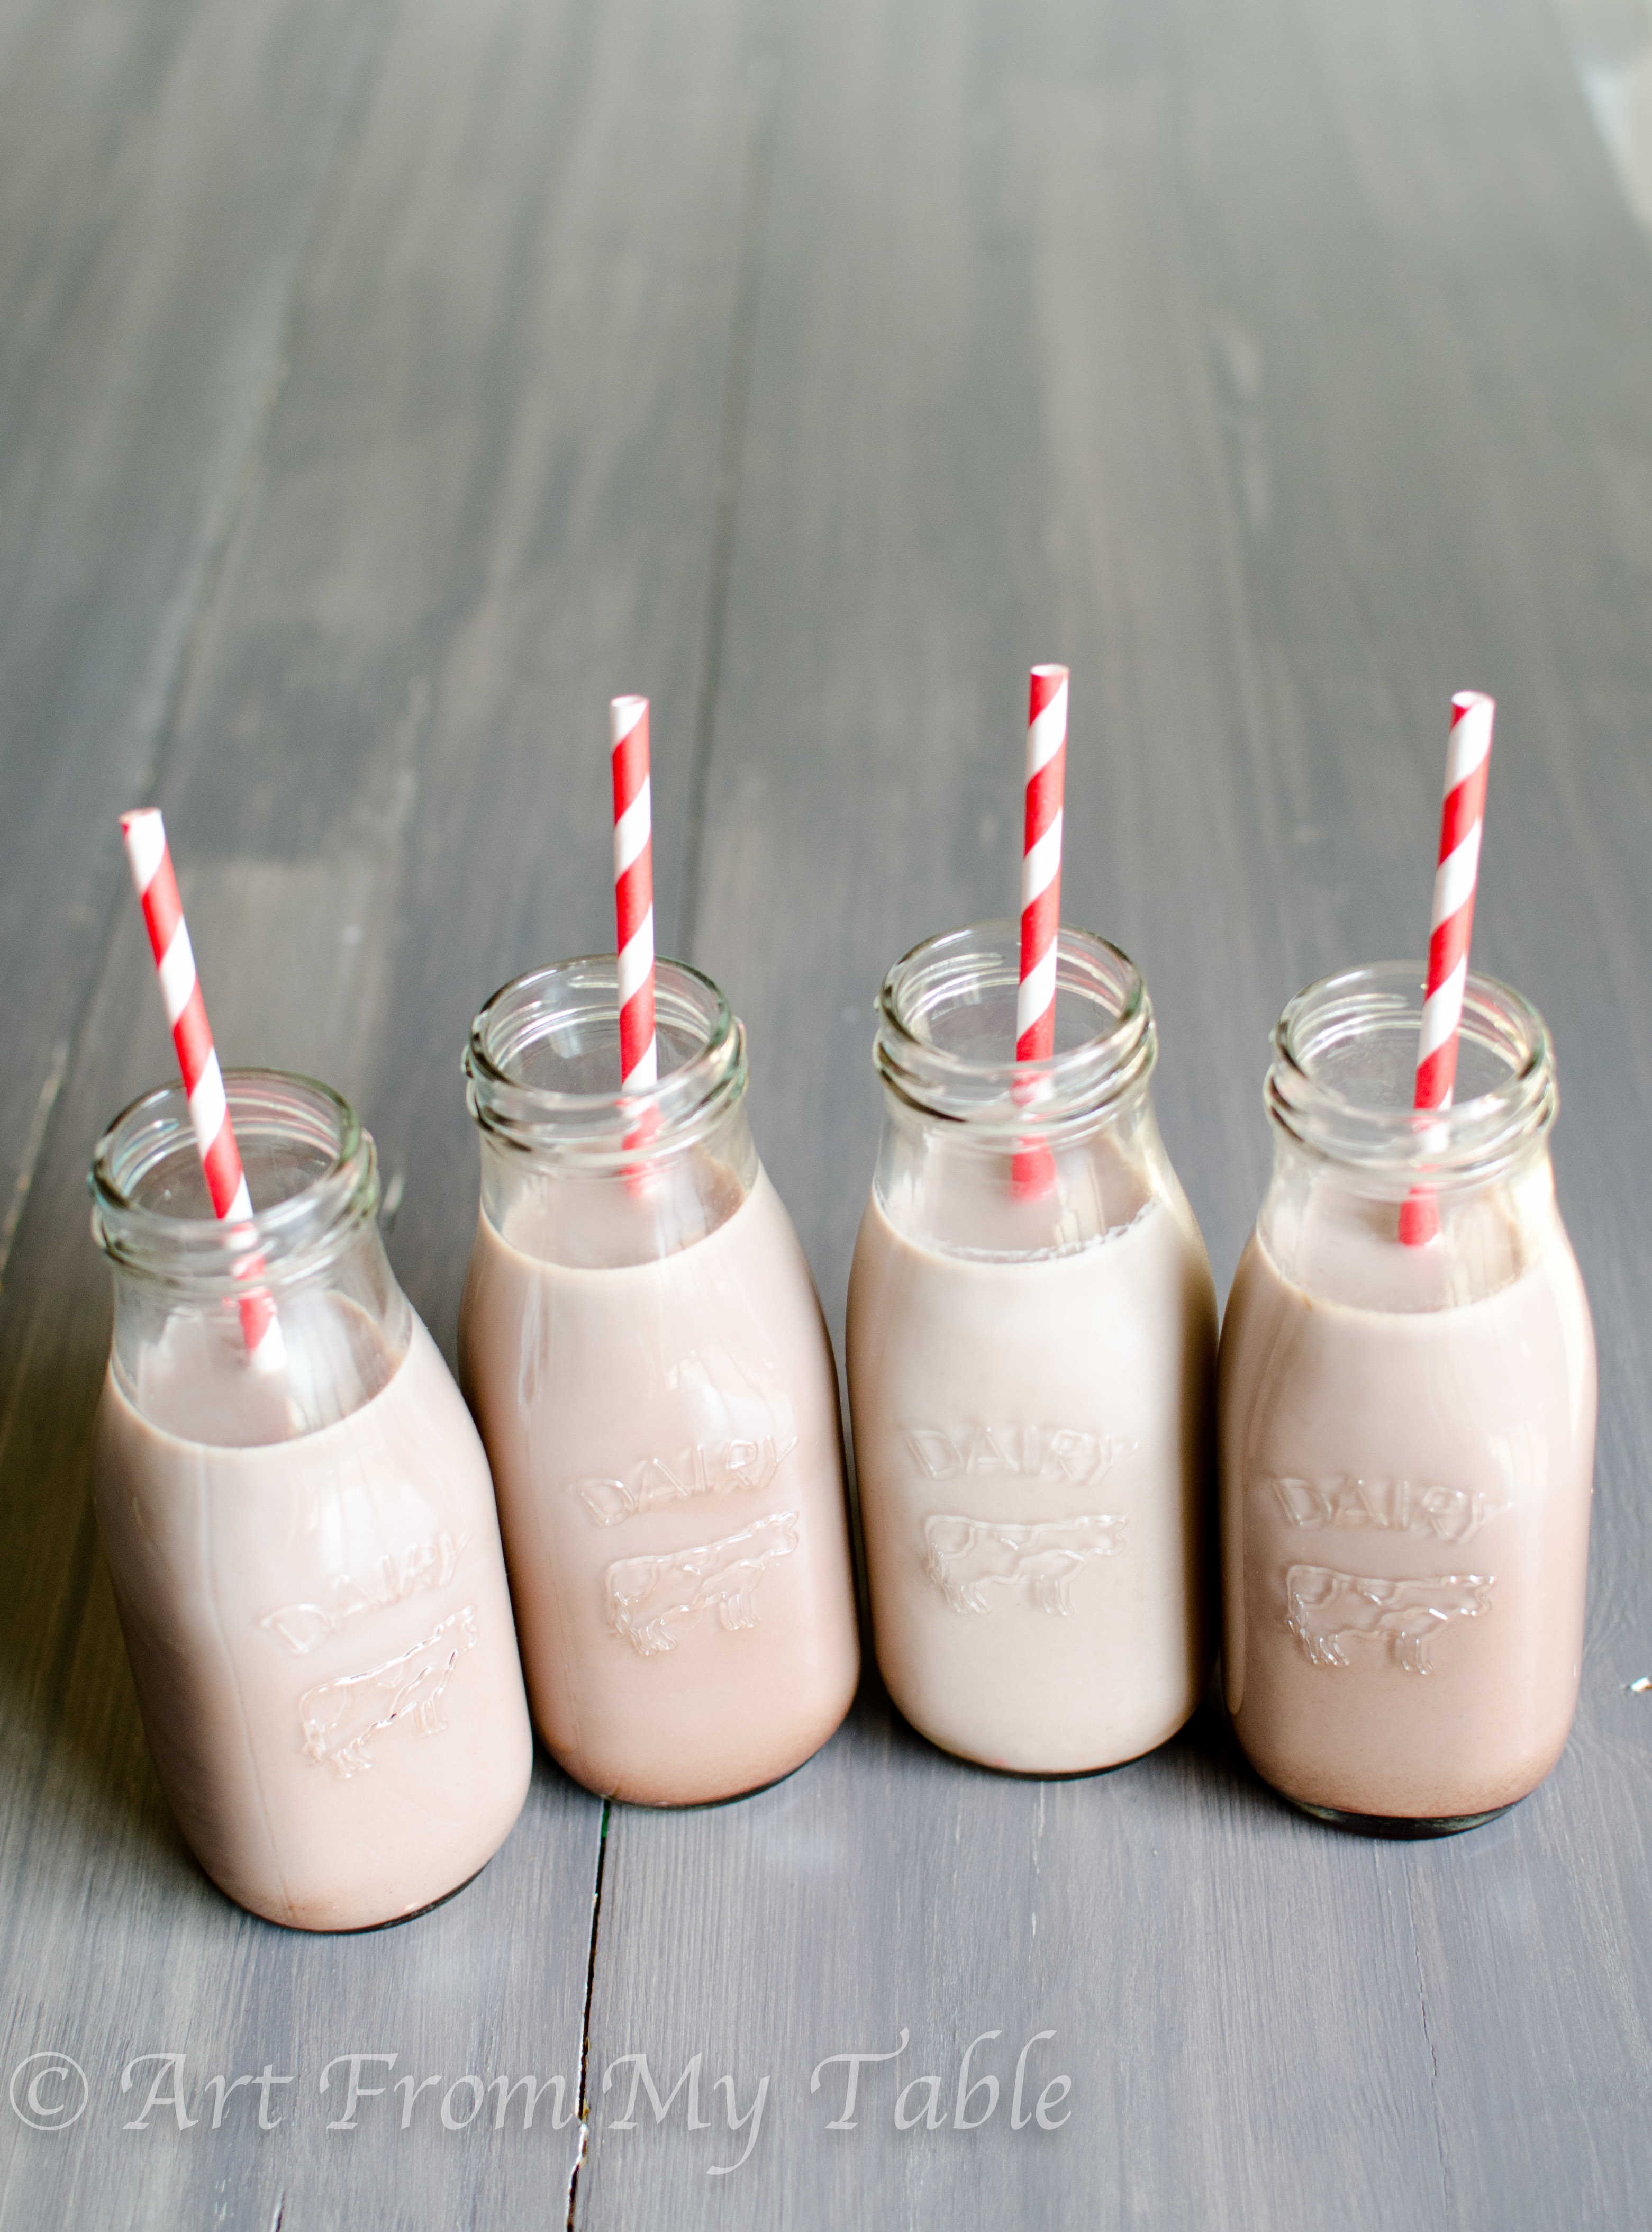 Four small glass milk bottles full of homemade chocolate  milk.